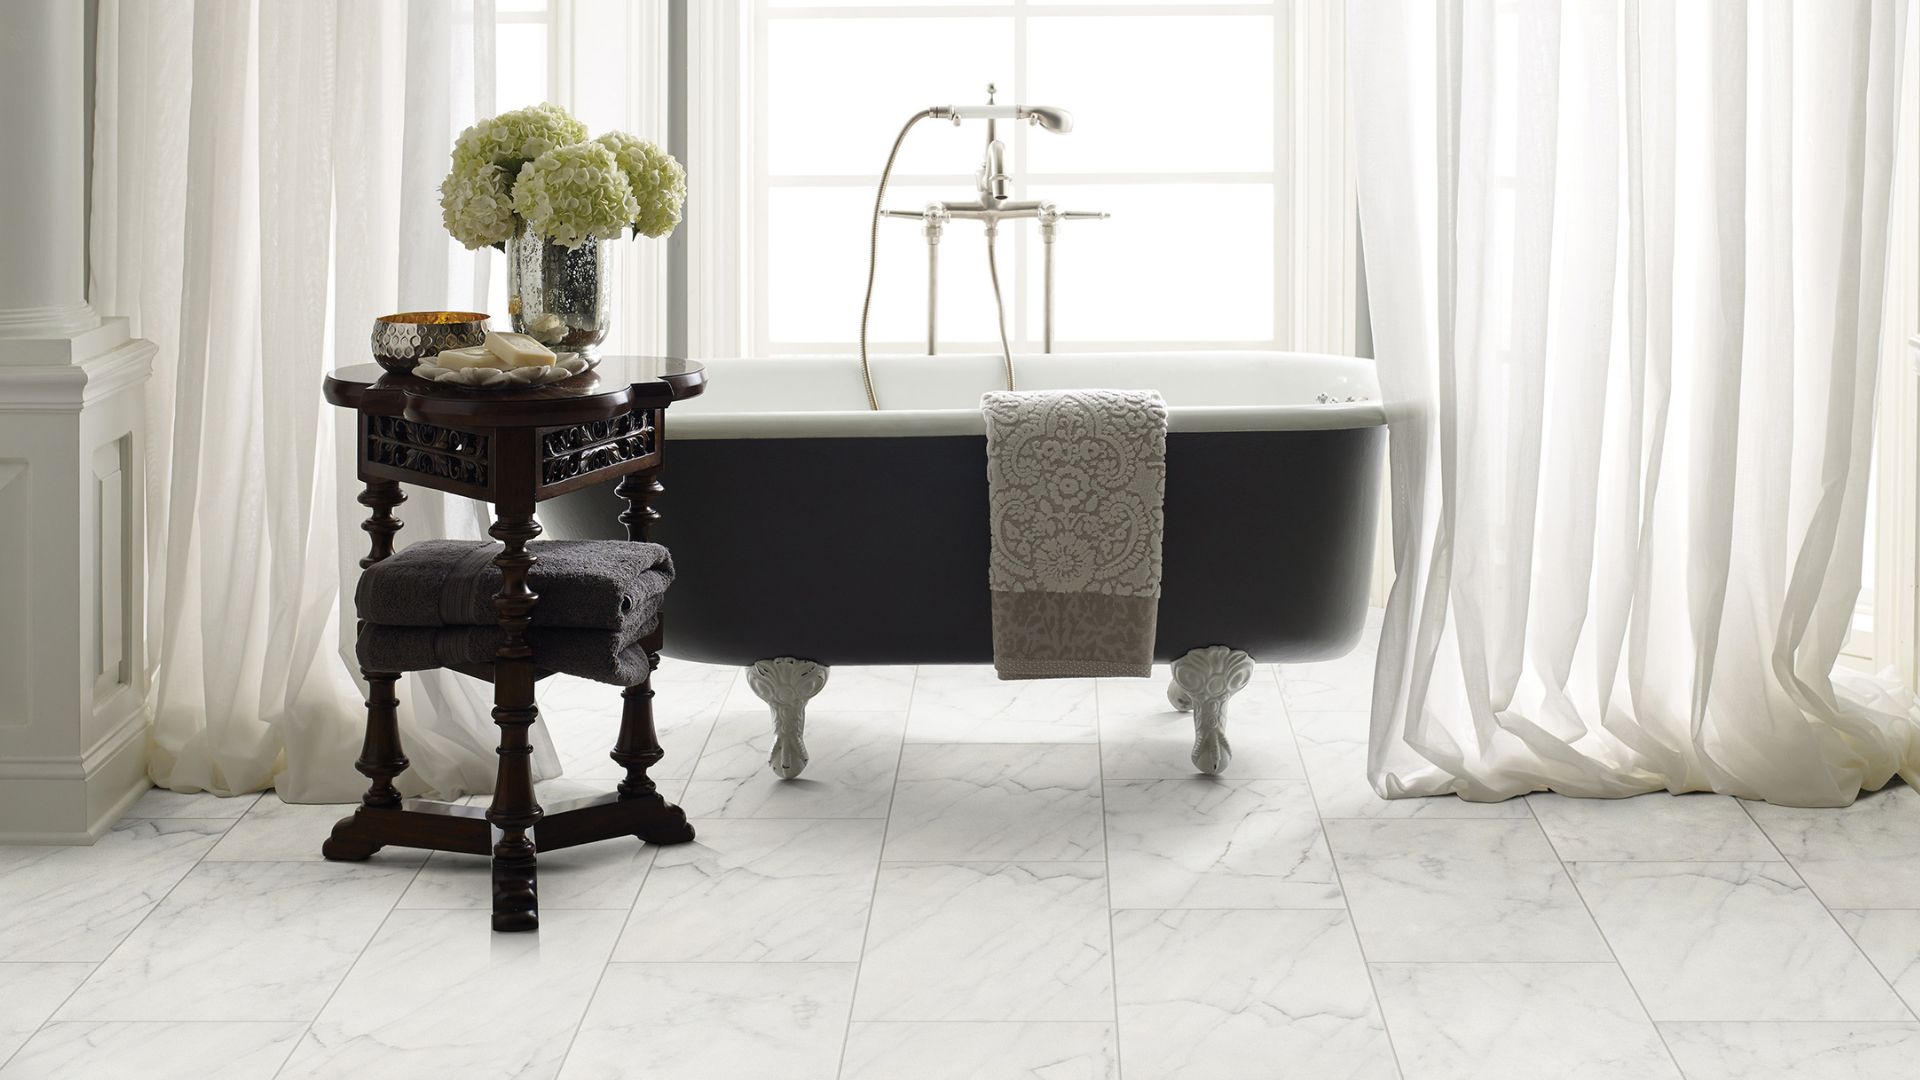 white tile flooring in an elegant bright bathroom